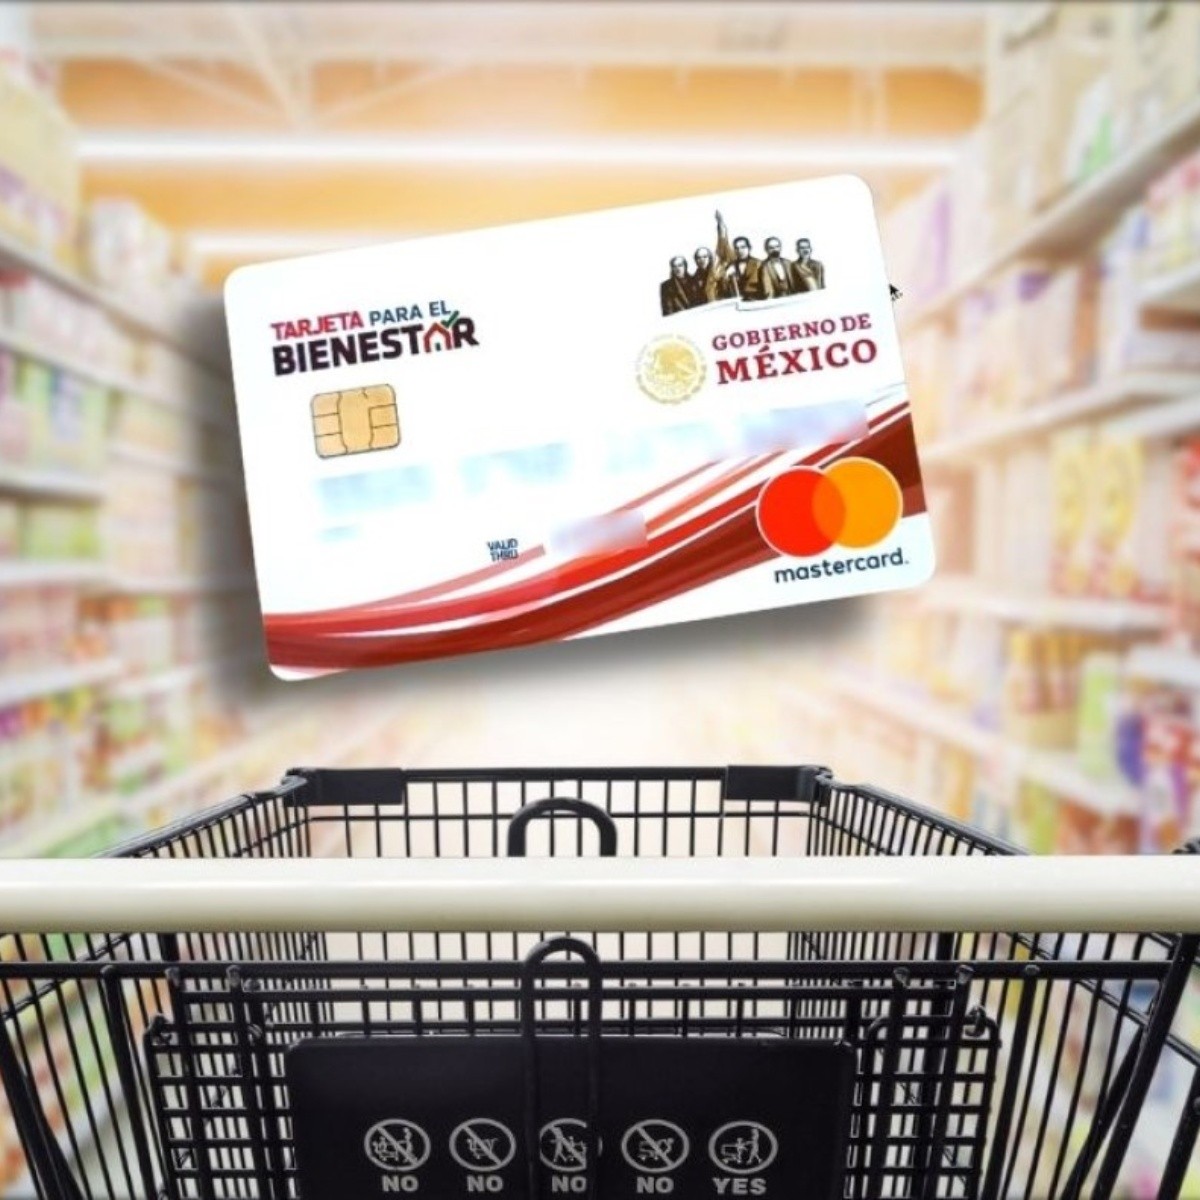 pensión bienestar: supermercados donde puedes retirar dinero de la tarjeta